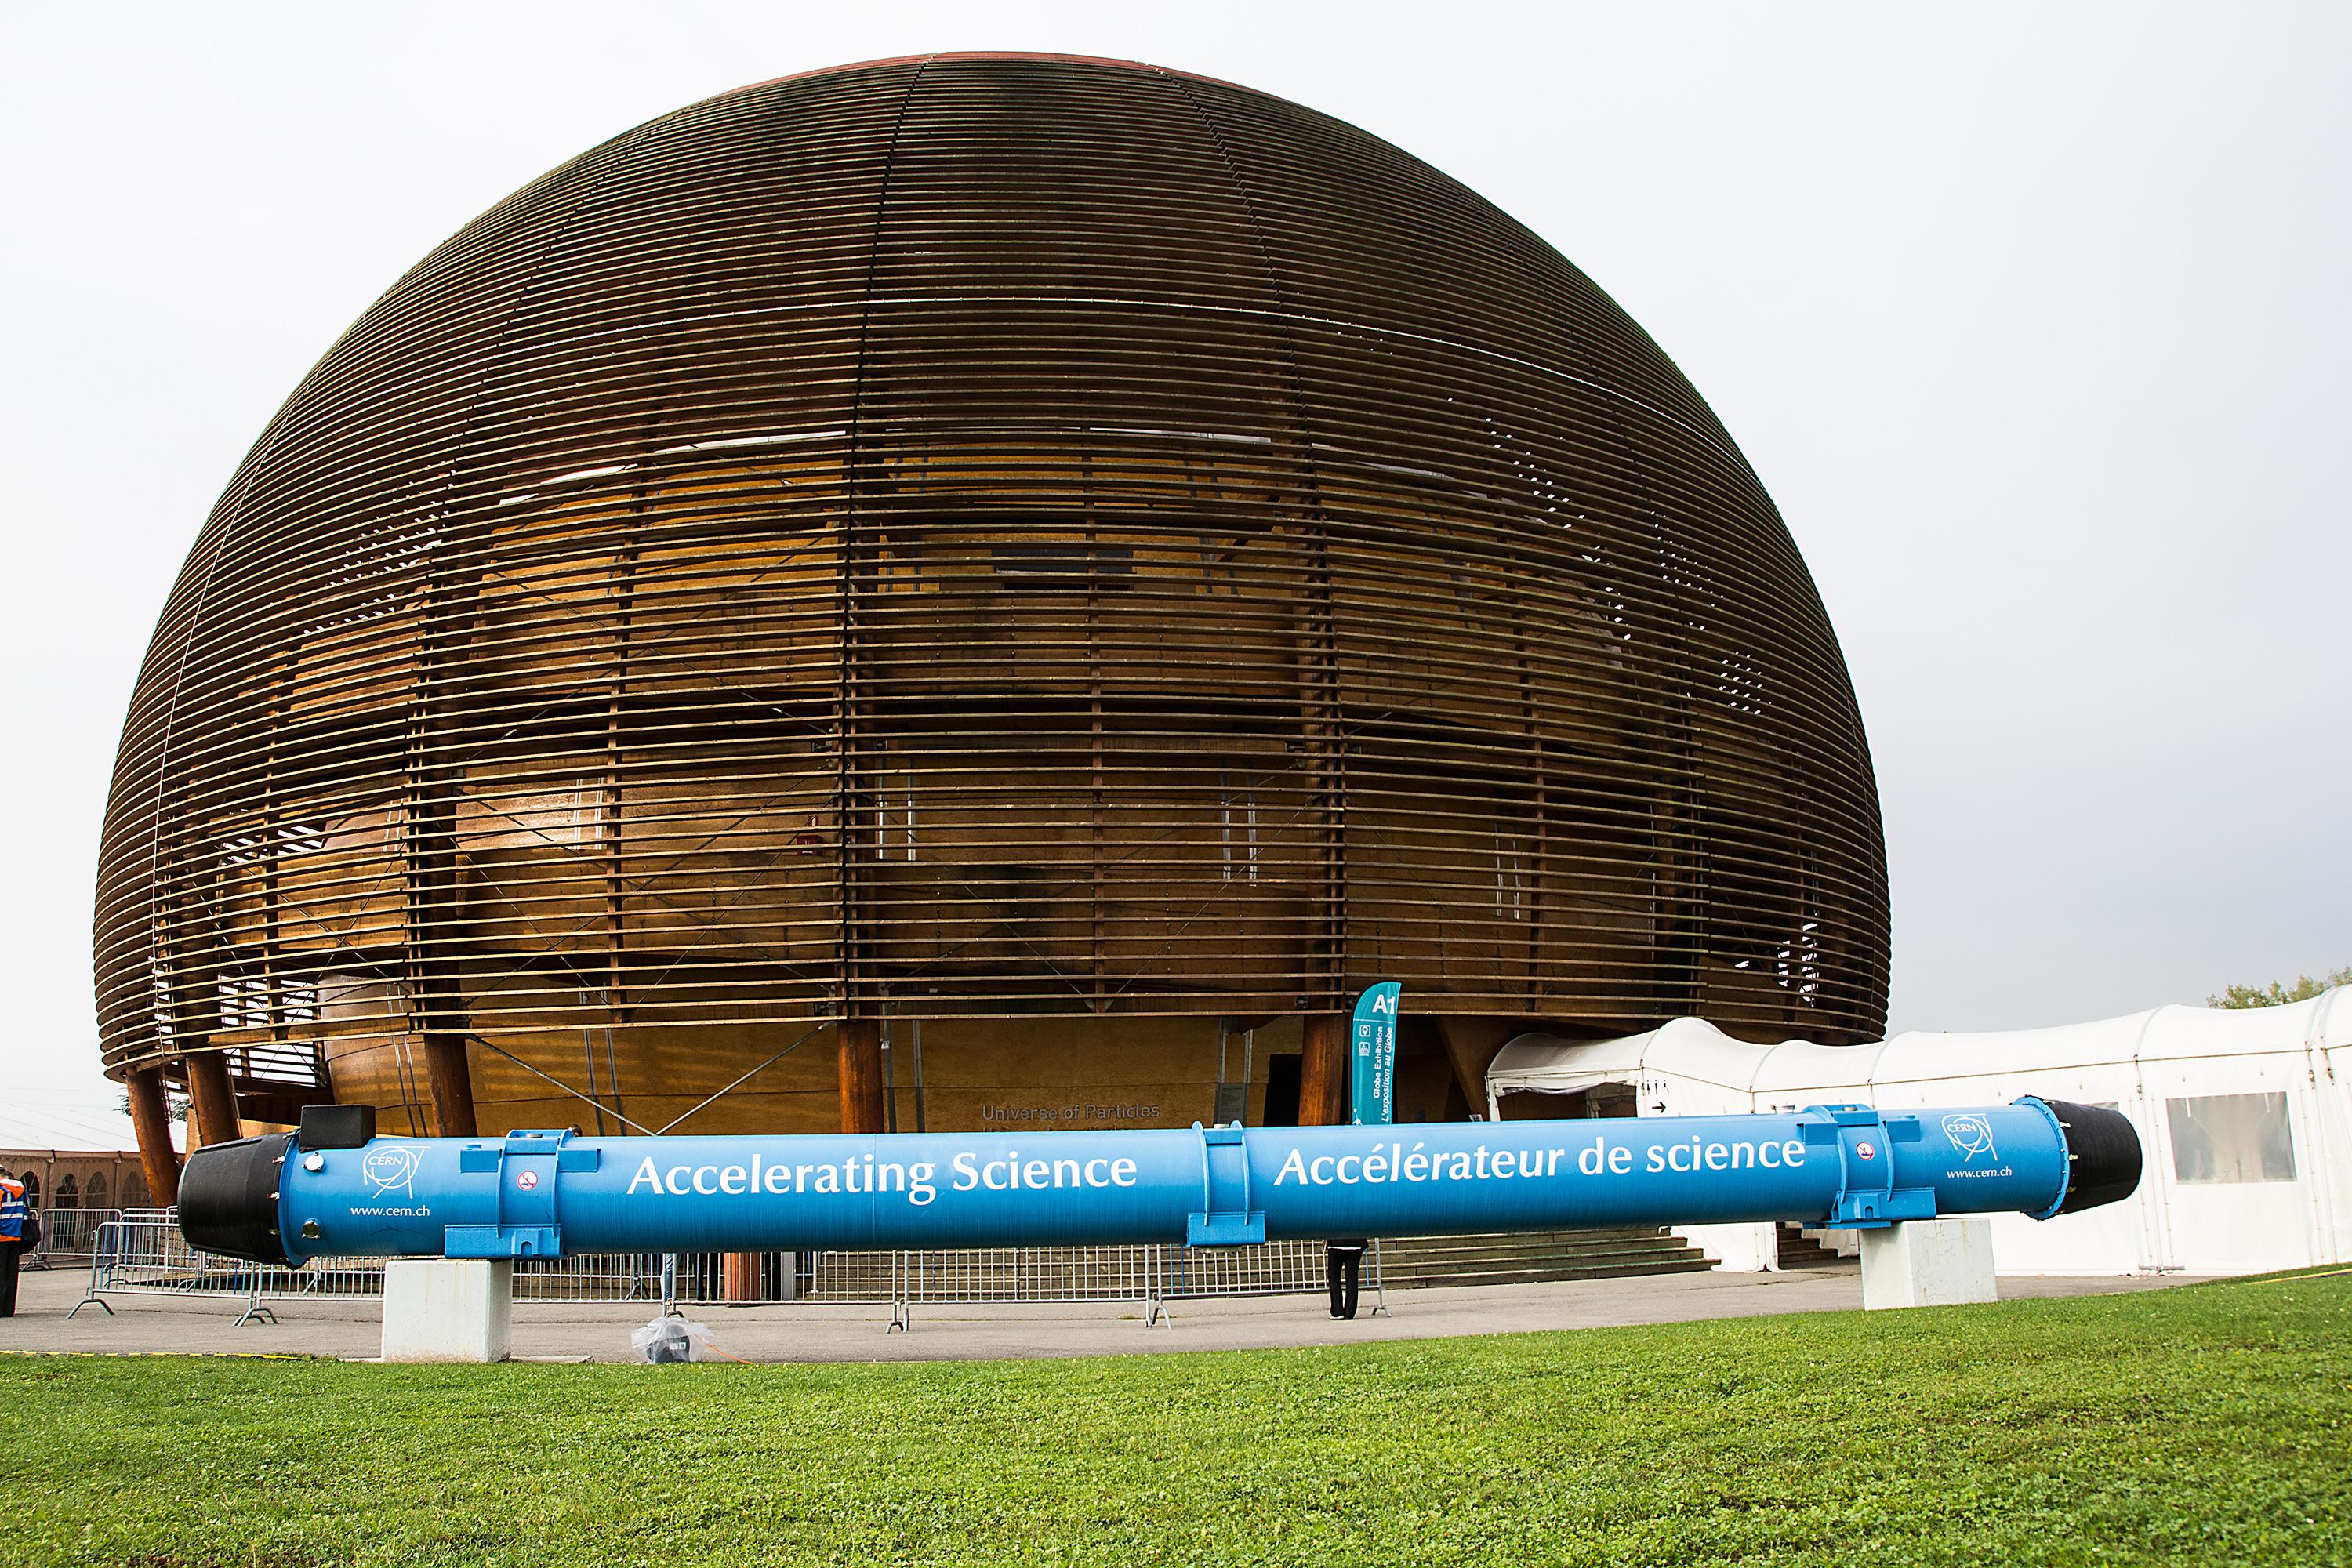 Etter endt produksjon blir de 50 meter lange magnetene fraktet til et eget anlegg hos CERN, som gjør den siste kvalitetssjekken. Her blir også magnetens egenskaper målt med uhyre nøyaktig preisjon, målinger som avgjør hvor i LHC magneten skal plasseres. En magnet som presterer litt under målet blir da satt sammen med andre magneter som retter opp i dette, et veldig nøyaktig og viktig logistikkprogram CERN bruker for å ha full kontroll på alle egenskapene i LHC. Foto: Jørgen Elton Nilsen, Hardware.no